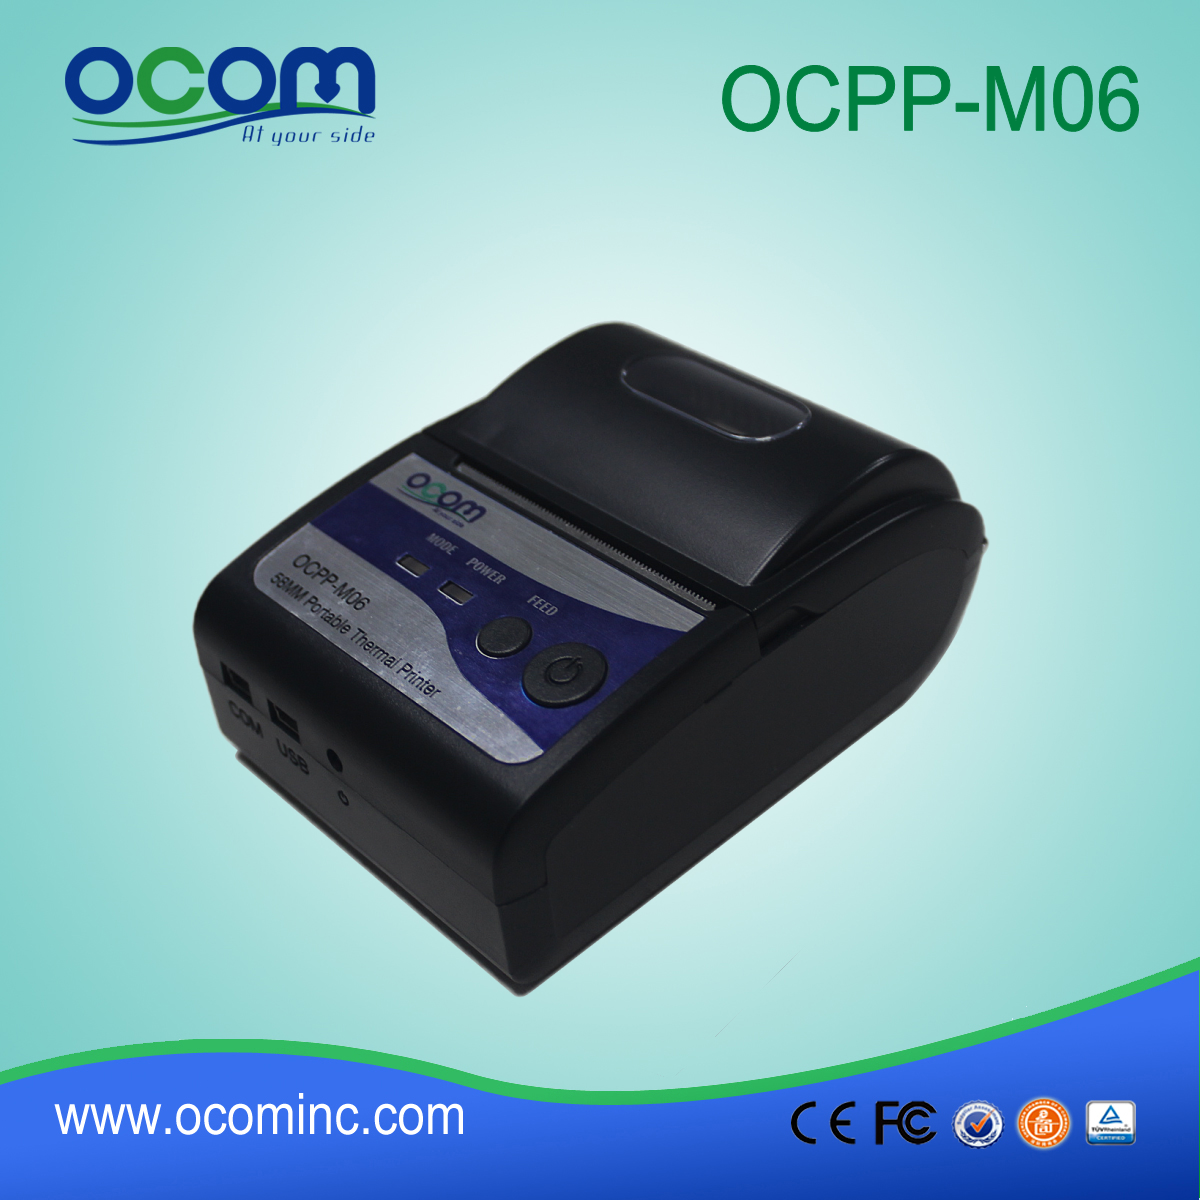 (OCPP-M06) OCOM 2015 chaude vente android imprimante portable, imprimante portable bluetooth